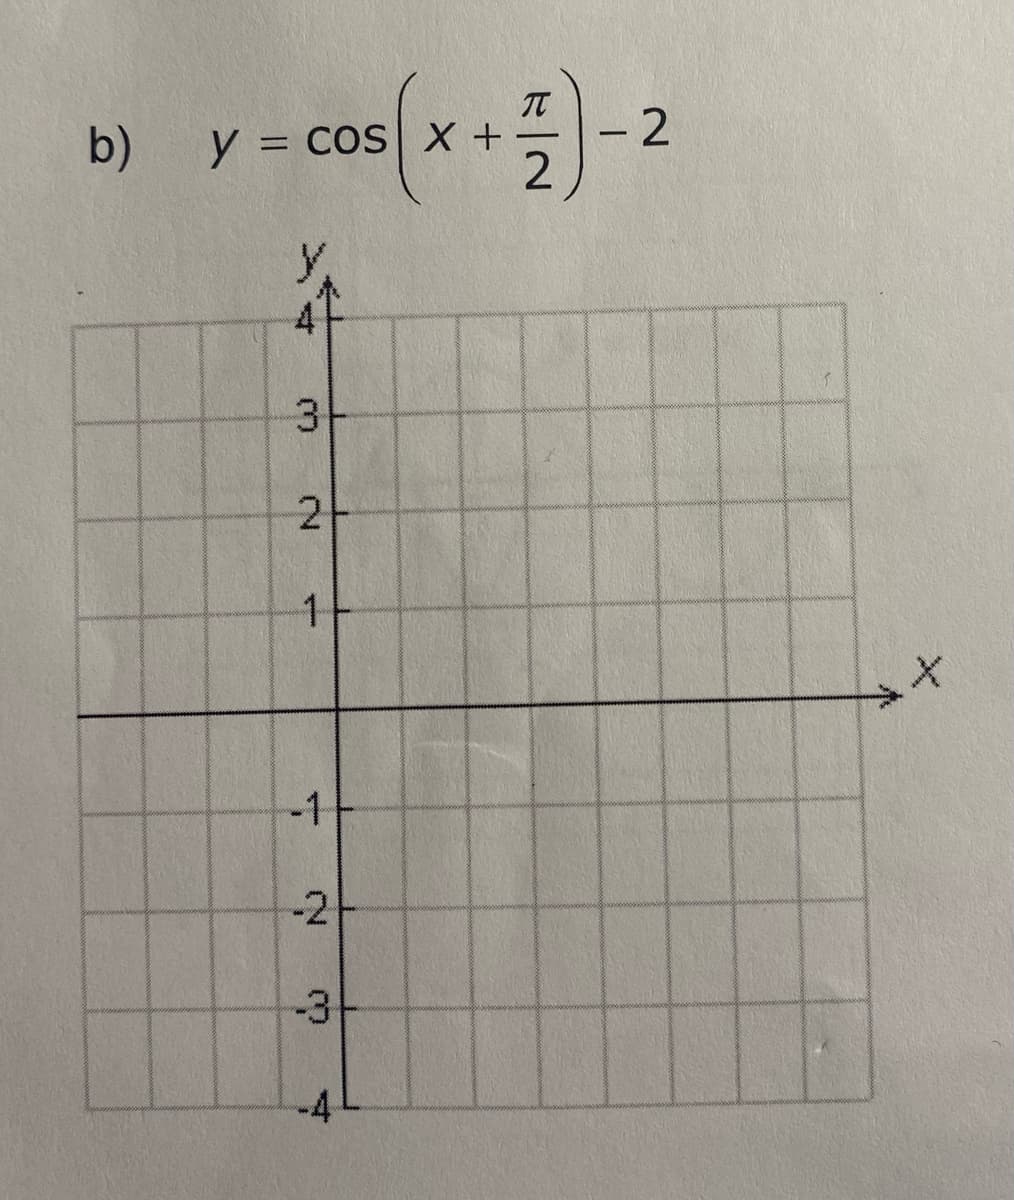 b)
y = cos(x + 1)-2
Y.
47
3
2+
wwww...k
1
-1
-2+
-3-
-4
+